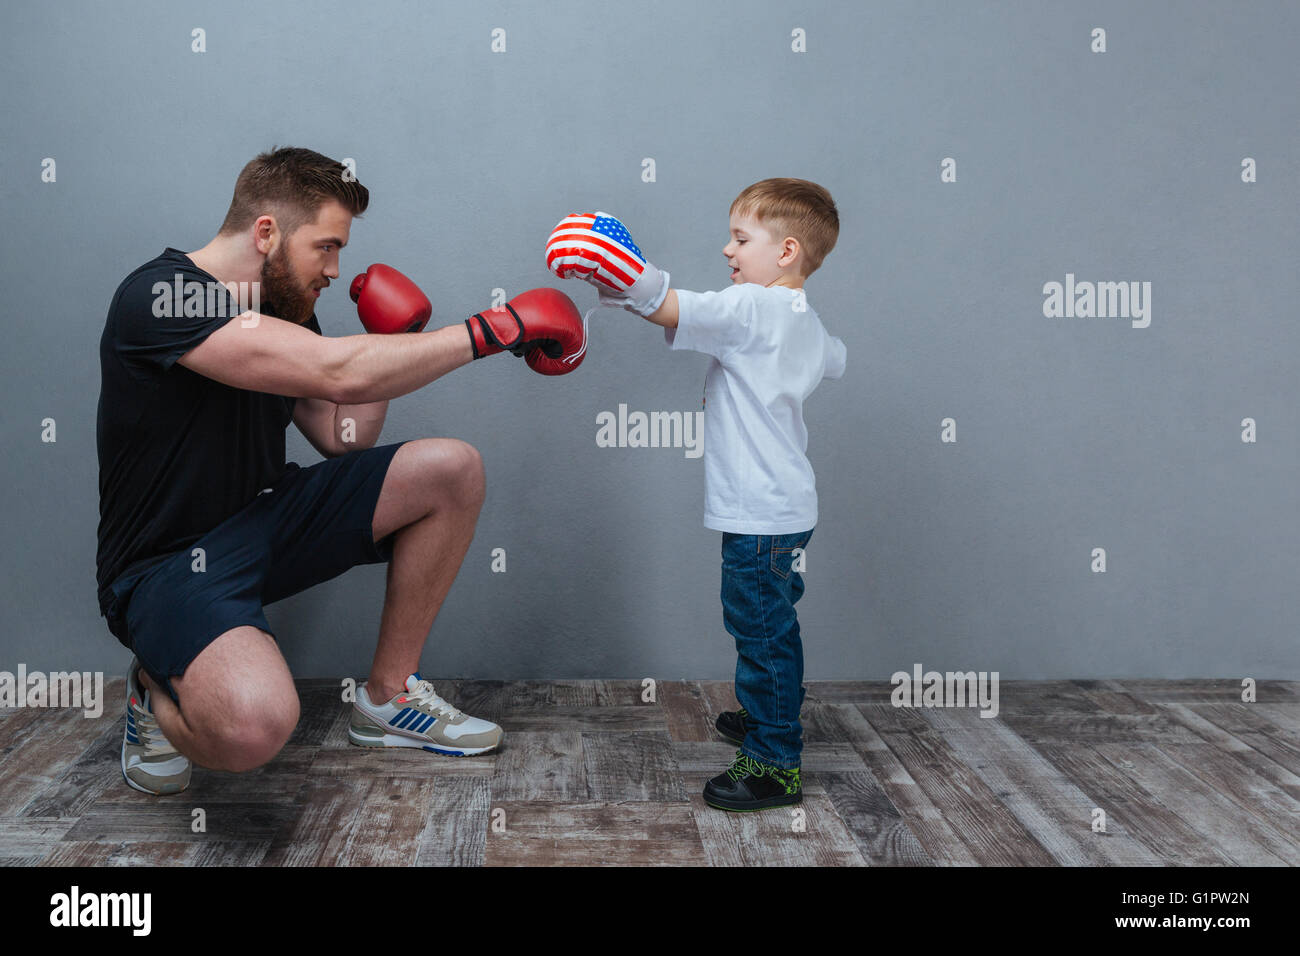 Vater und Söhnlein Training im Boxhandschuhe zusammen über grauen Hintergrund Stockfoto